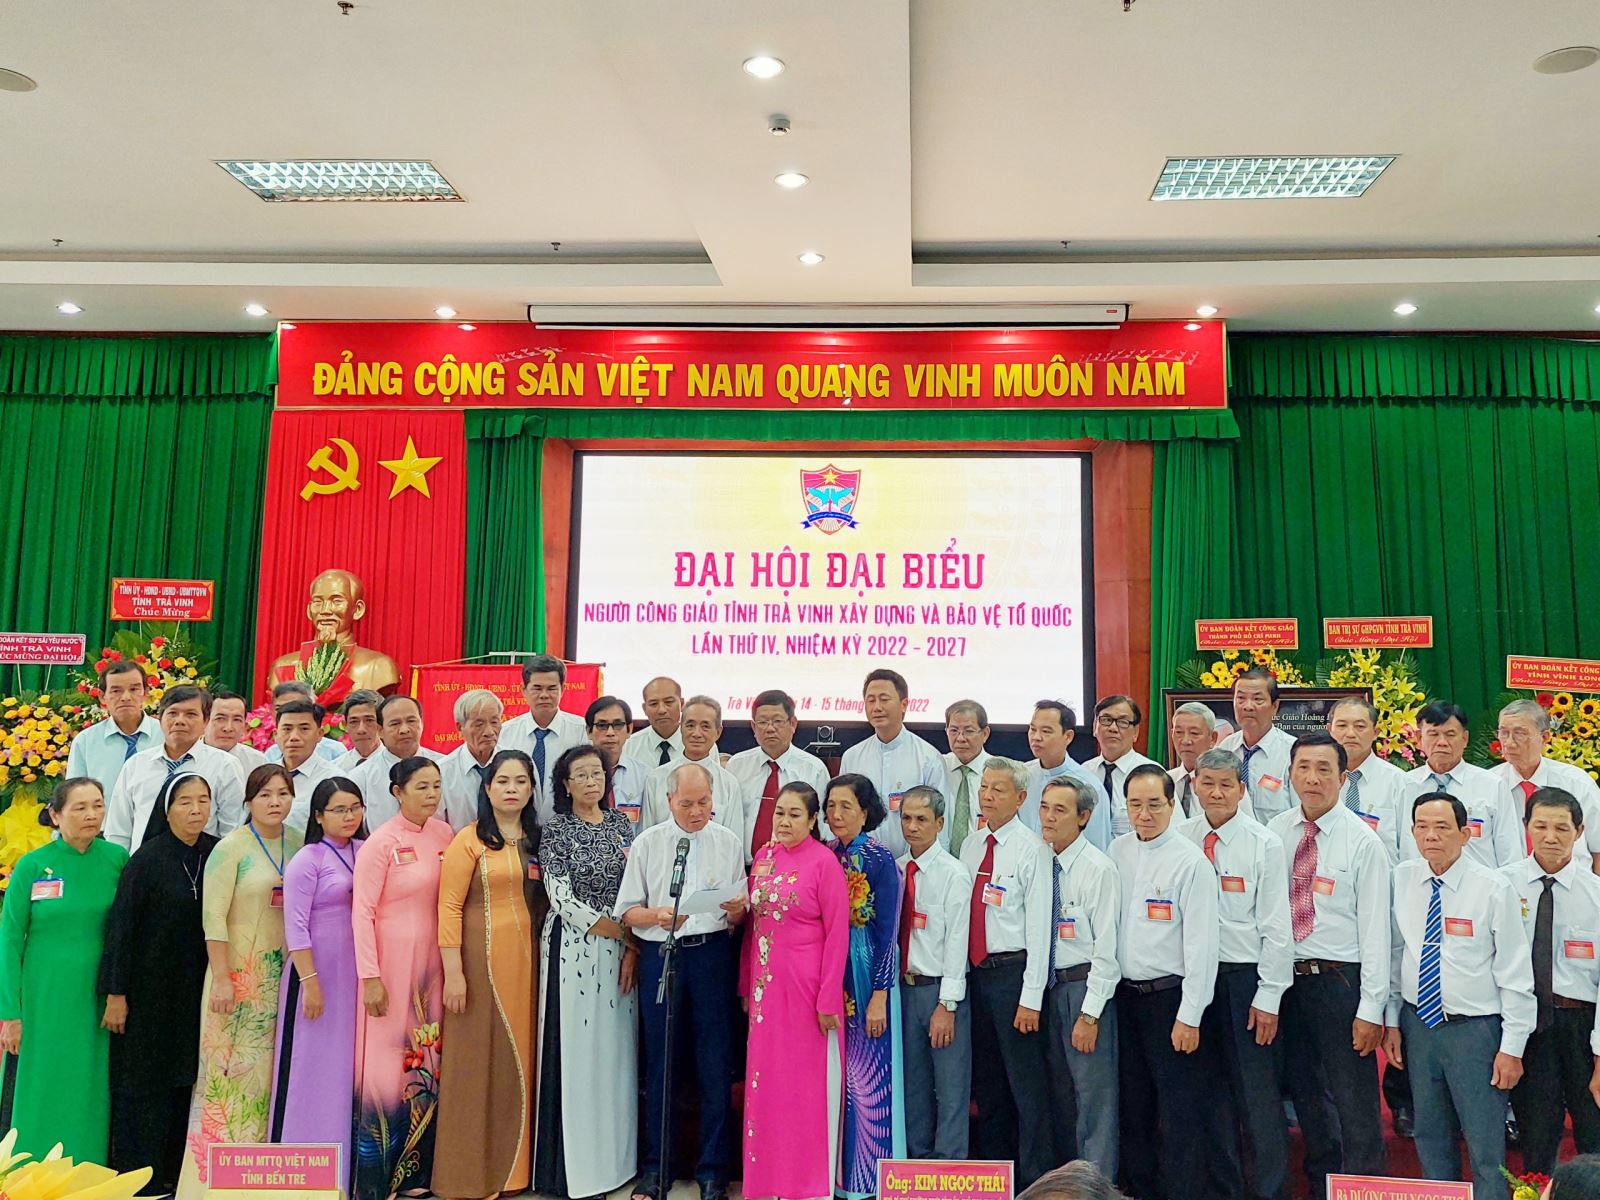 Ủy viên UBĐKCG tỉnh Trà Vinh, nhiệm kỳ 2022 - 2027 ra mắt Đại hội